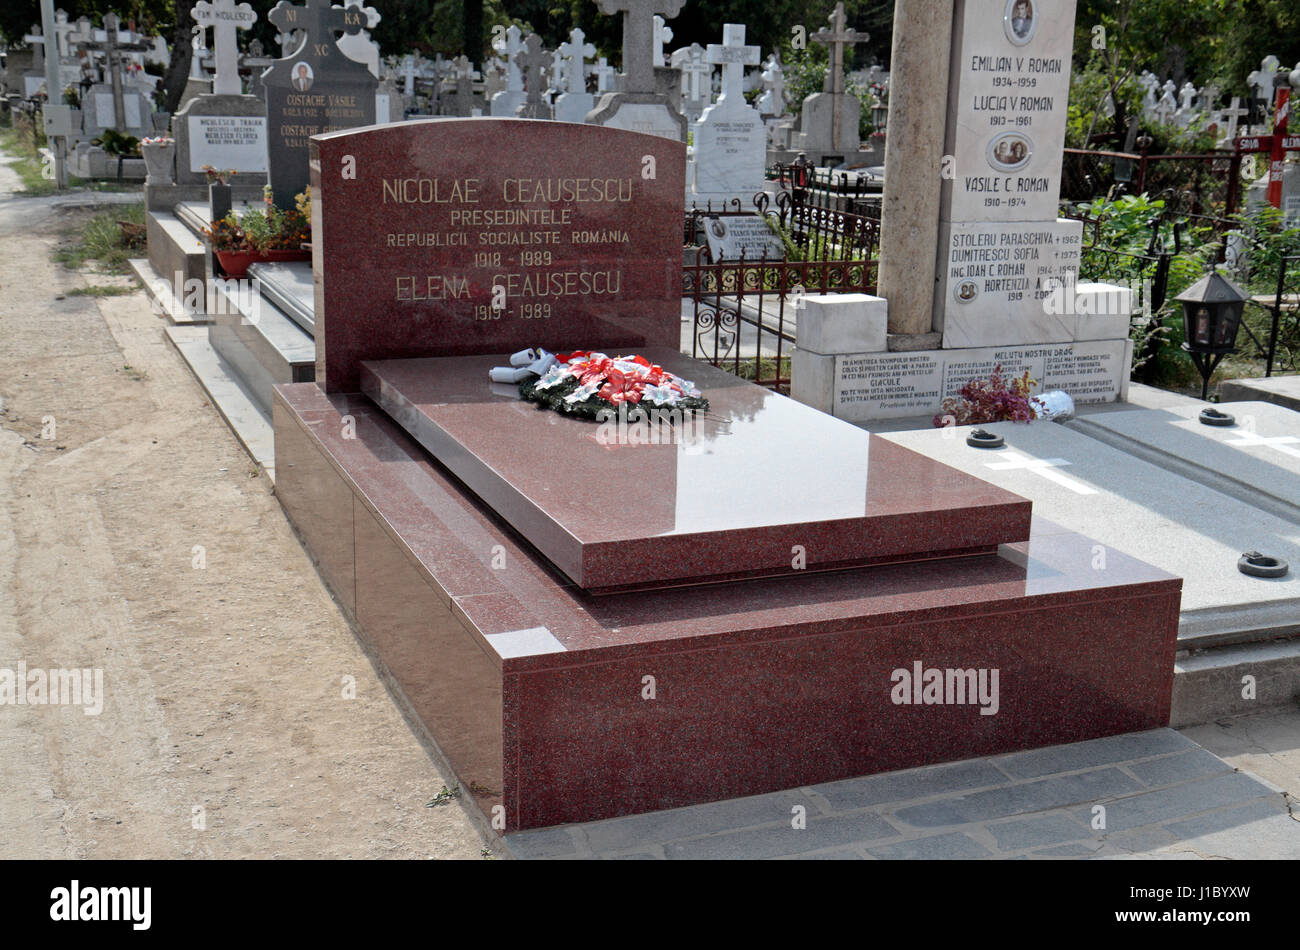 Das gemeinsame Grab von Nicolae & Elena Ceausescu, Rumäniens Ex-Diktator während der kommunistischen Ära, Ghencea-Friedhof, Bukarest, Rumänien. Stockfoto